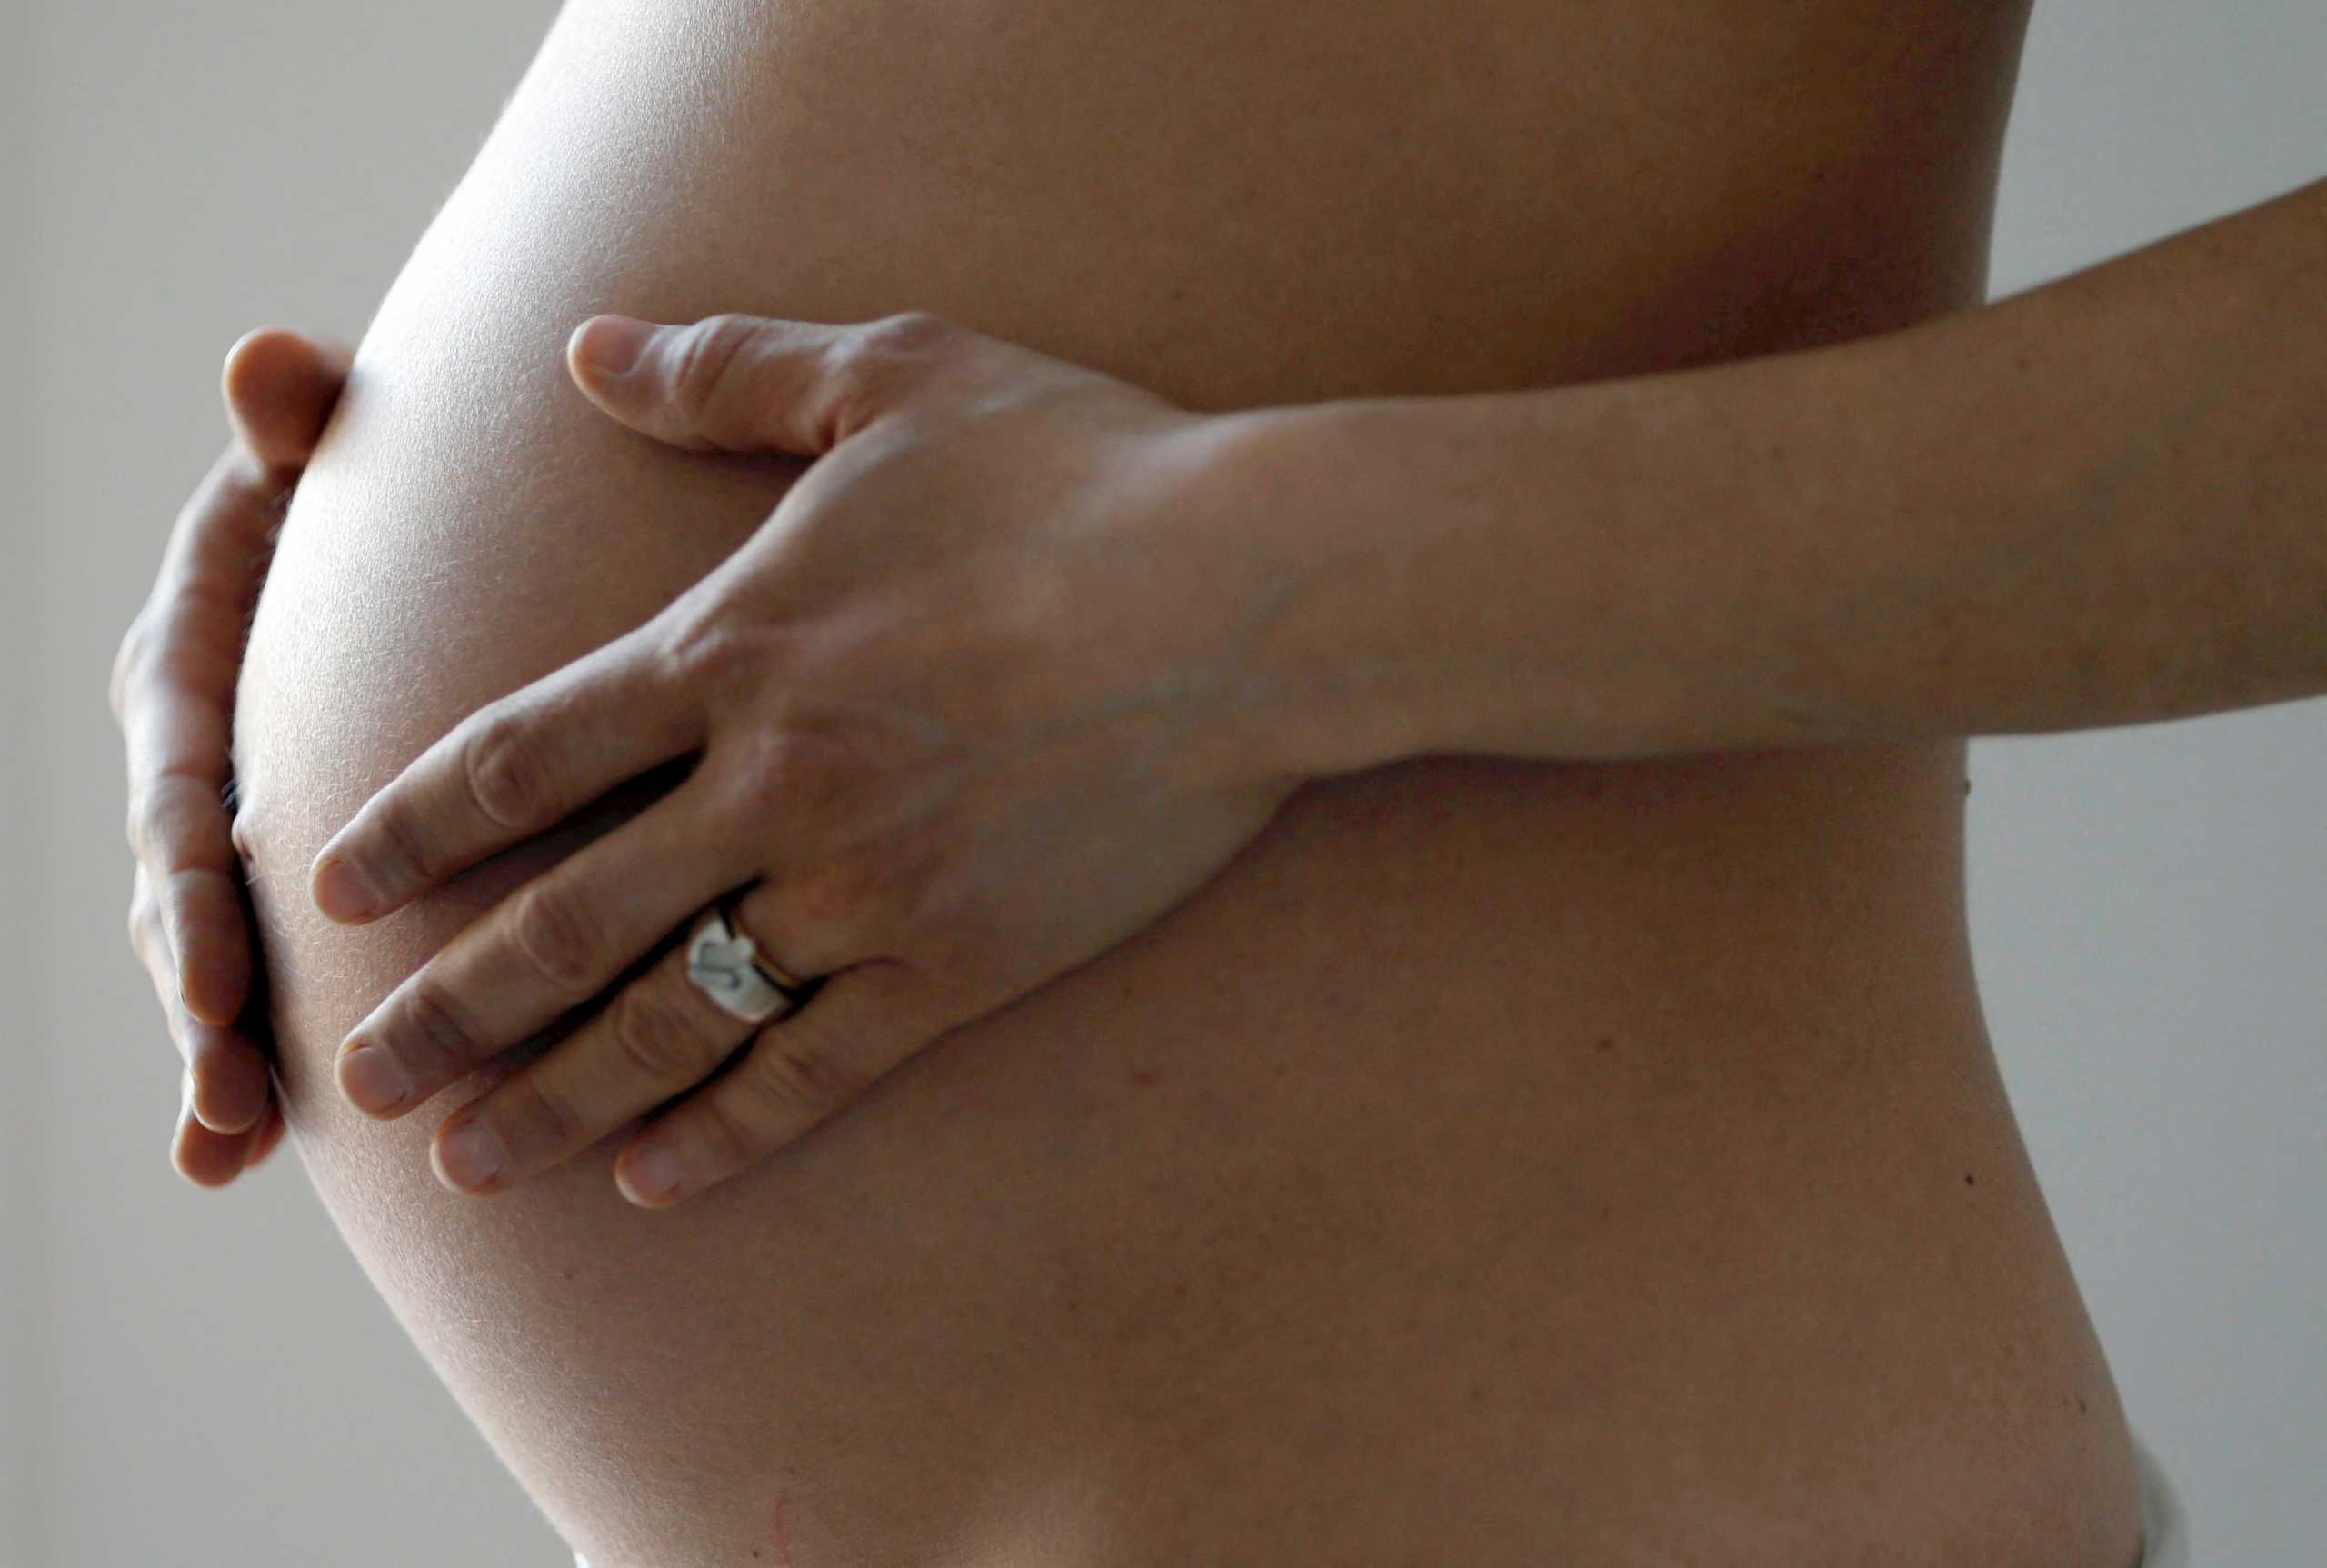 Εξωσωματική γονιμοποίηση: Στα 54 το όριο ηλικίας στην Ελλάδα – Τι προβλέπει το νέο νομοσχέδιο